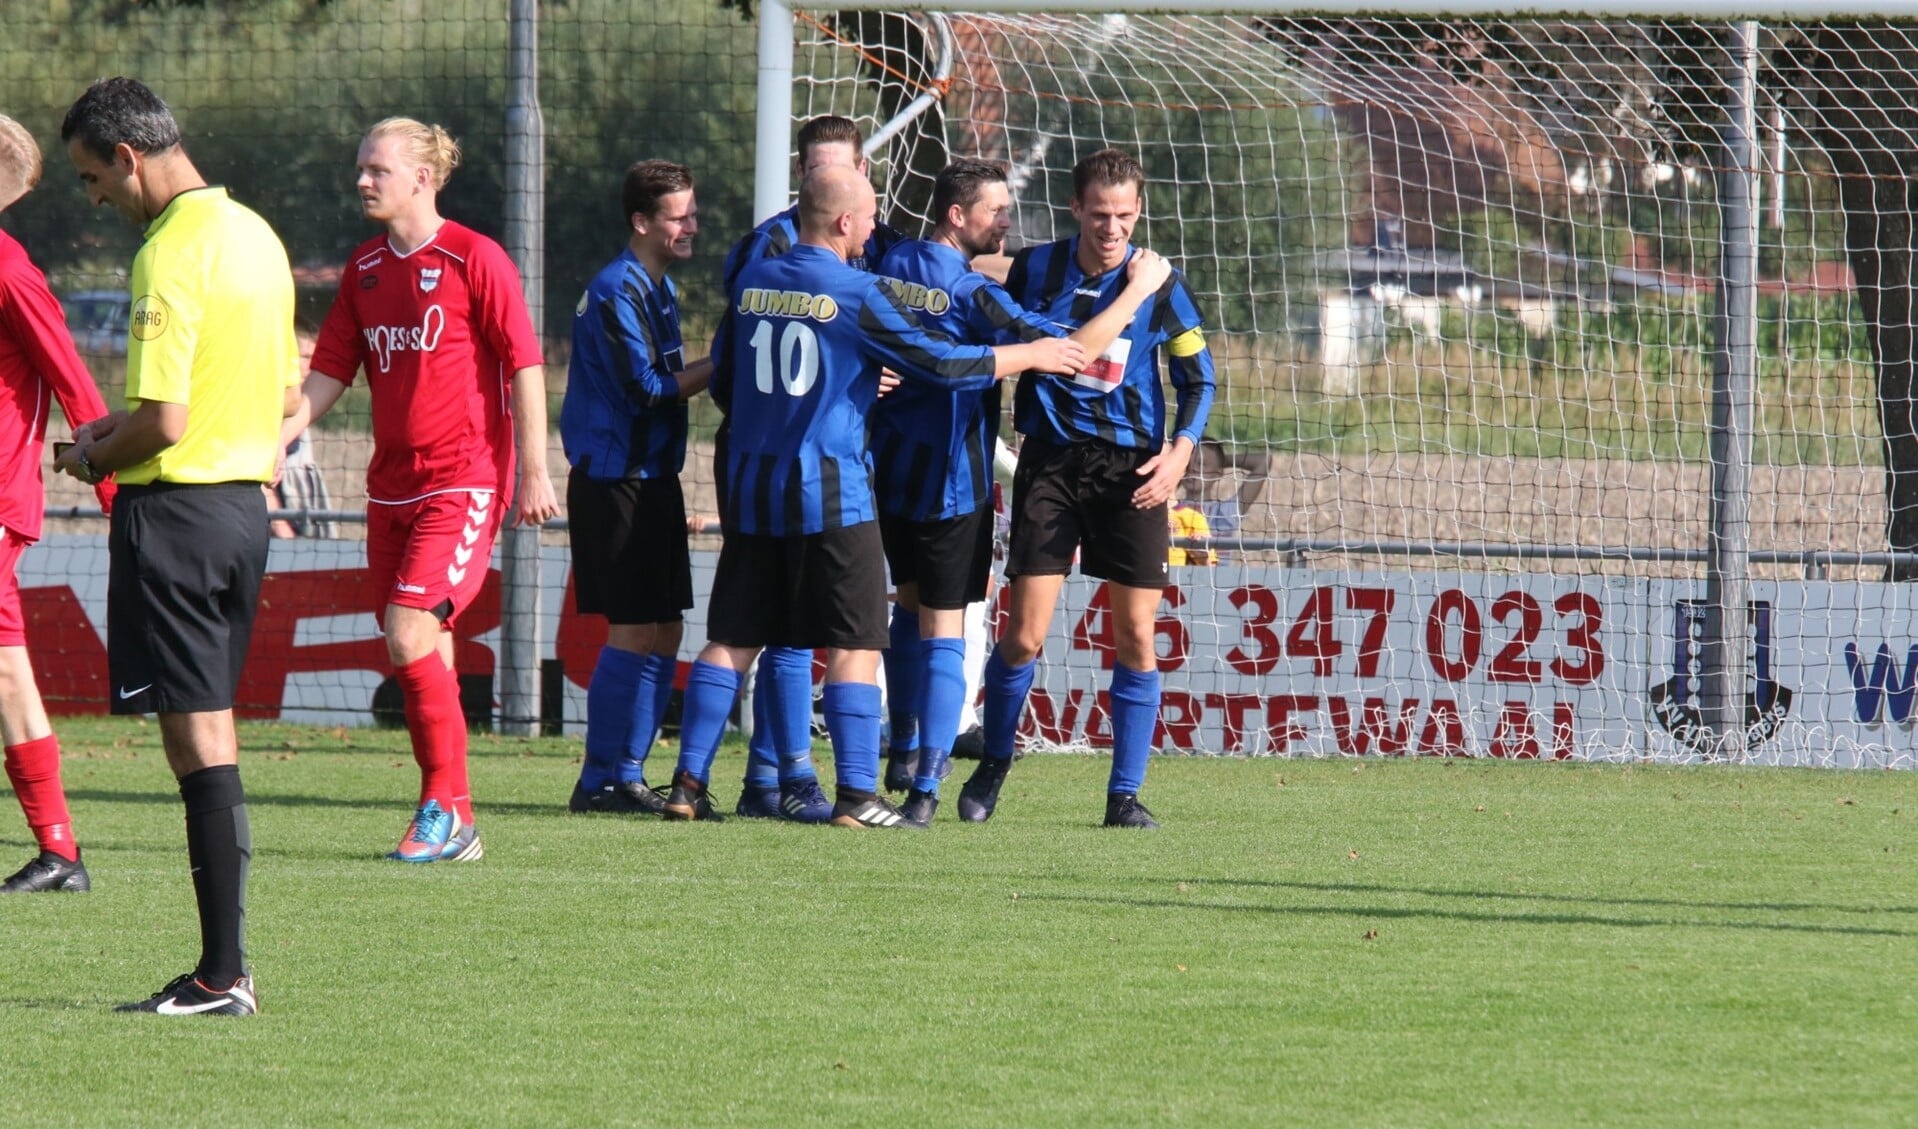 Douwe Zijlstra, Jesper Lakerveld en Ricardo Nijsen (v.l.n.r.) vieren de 3-0 van captain Michael Straatman. * Foto: Wil van Balen.